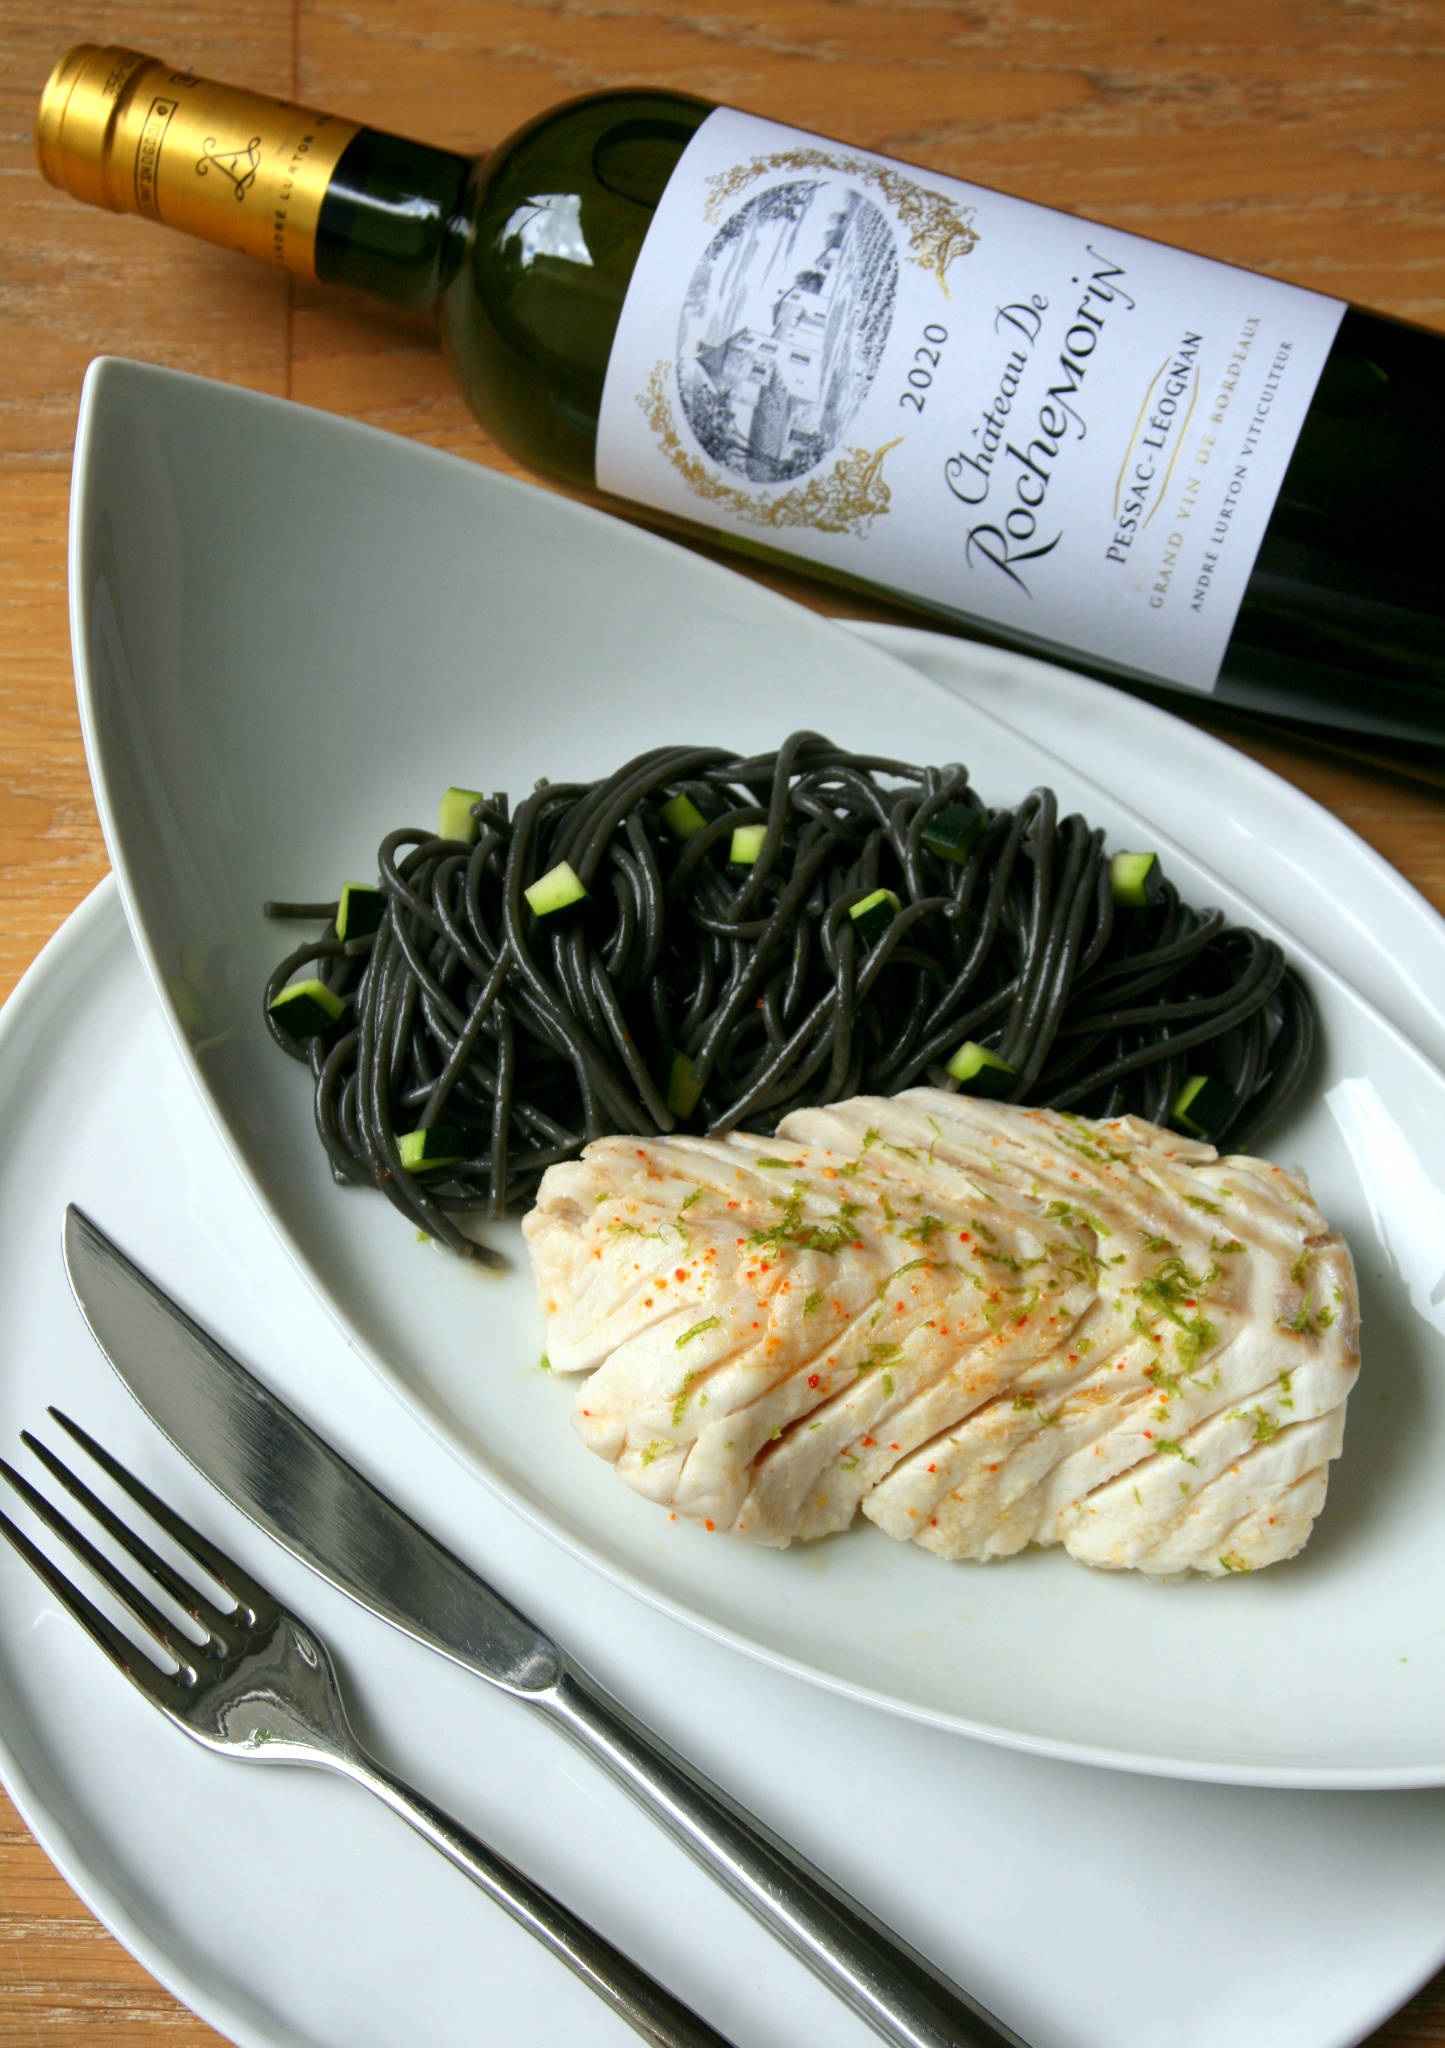 Cabillaud vapeur mariné au citron vert, spaghetti à l'encre de sèche, Château de Rochemorin blanc 2020